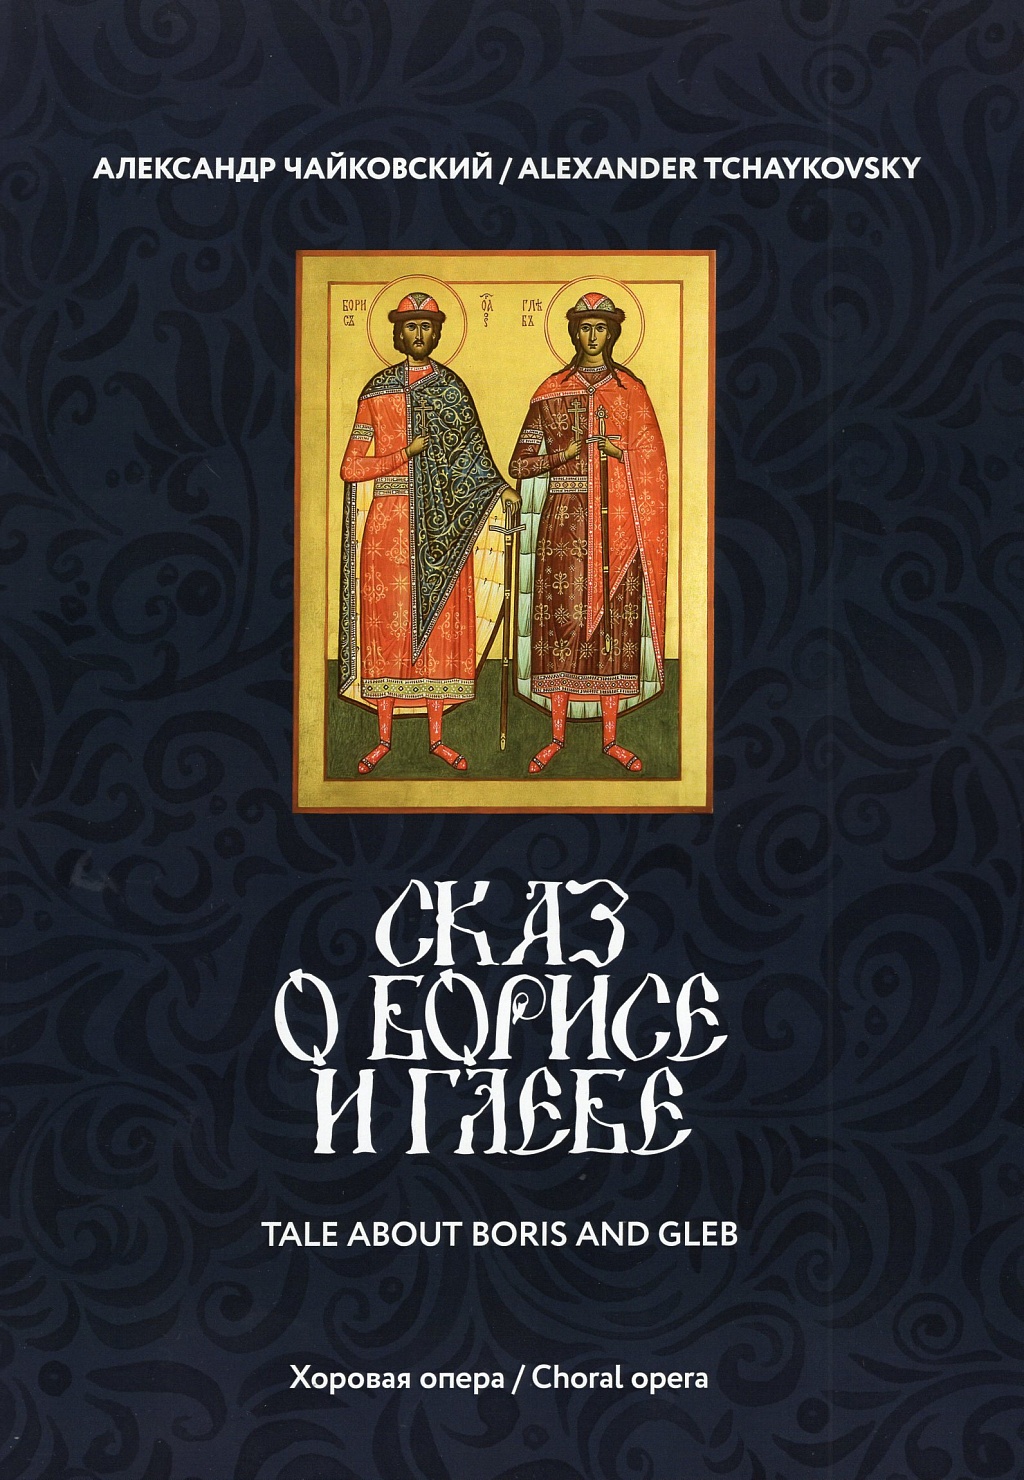 Реферат: Борис и Глеб в древнерусской литературе